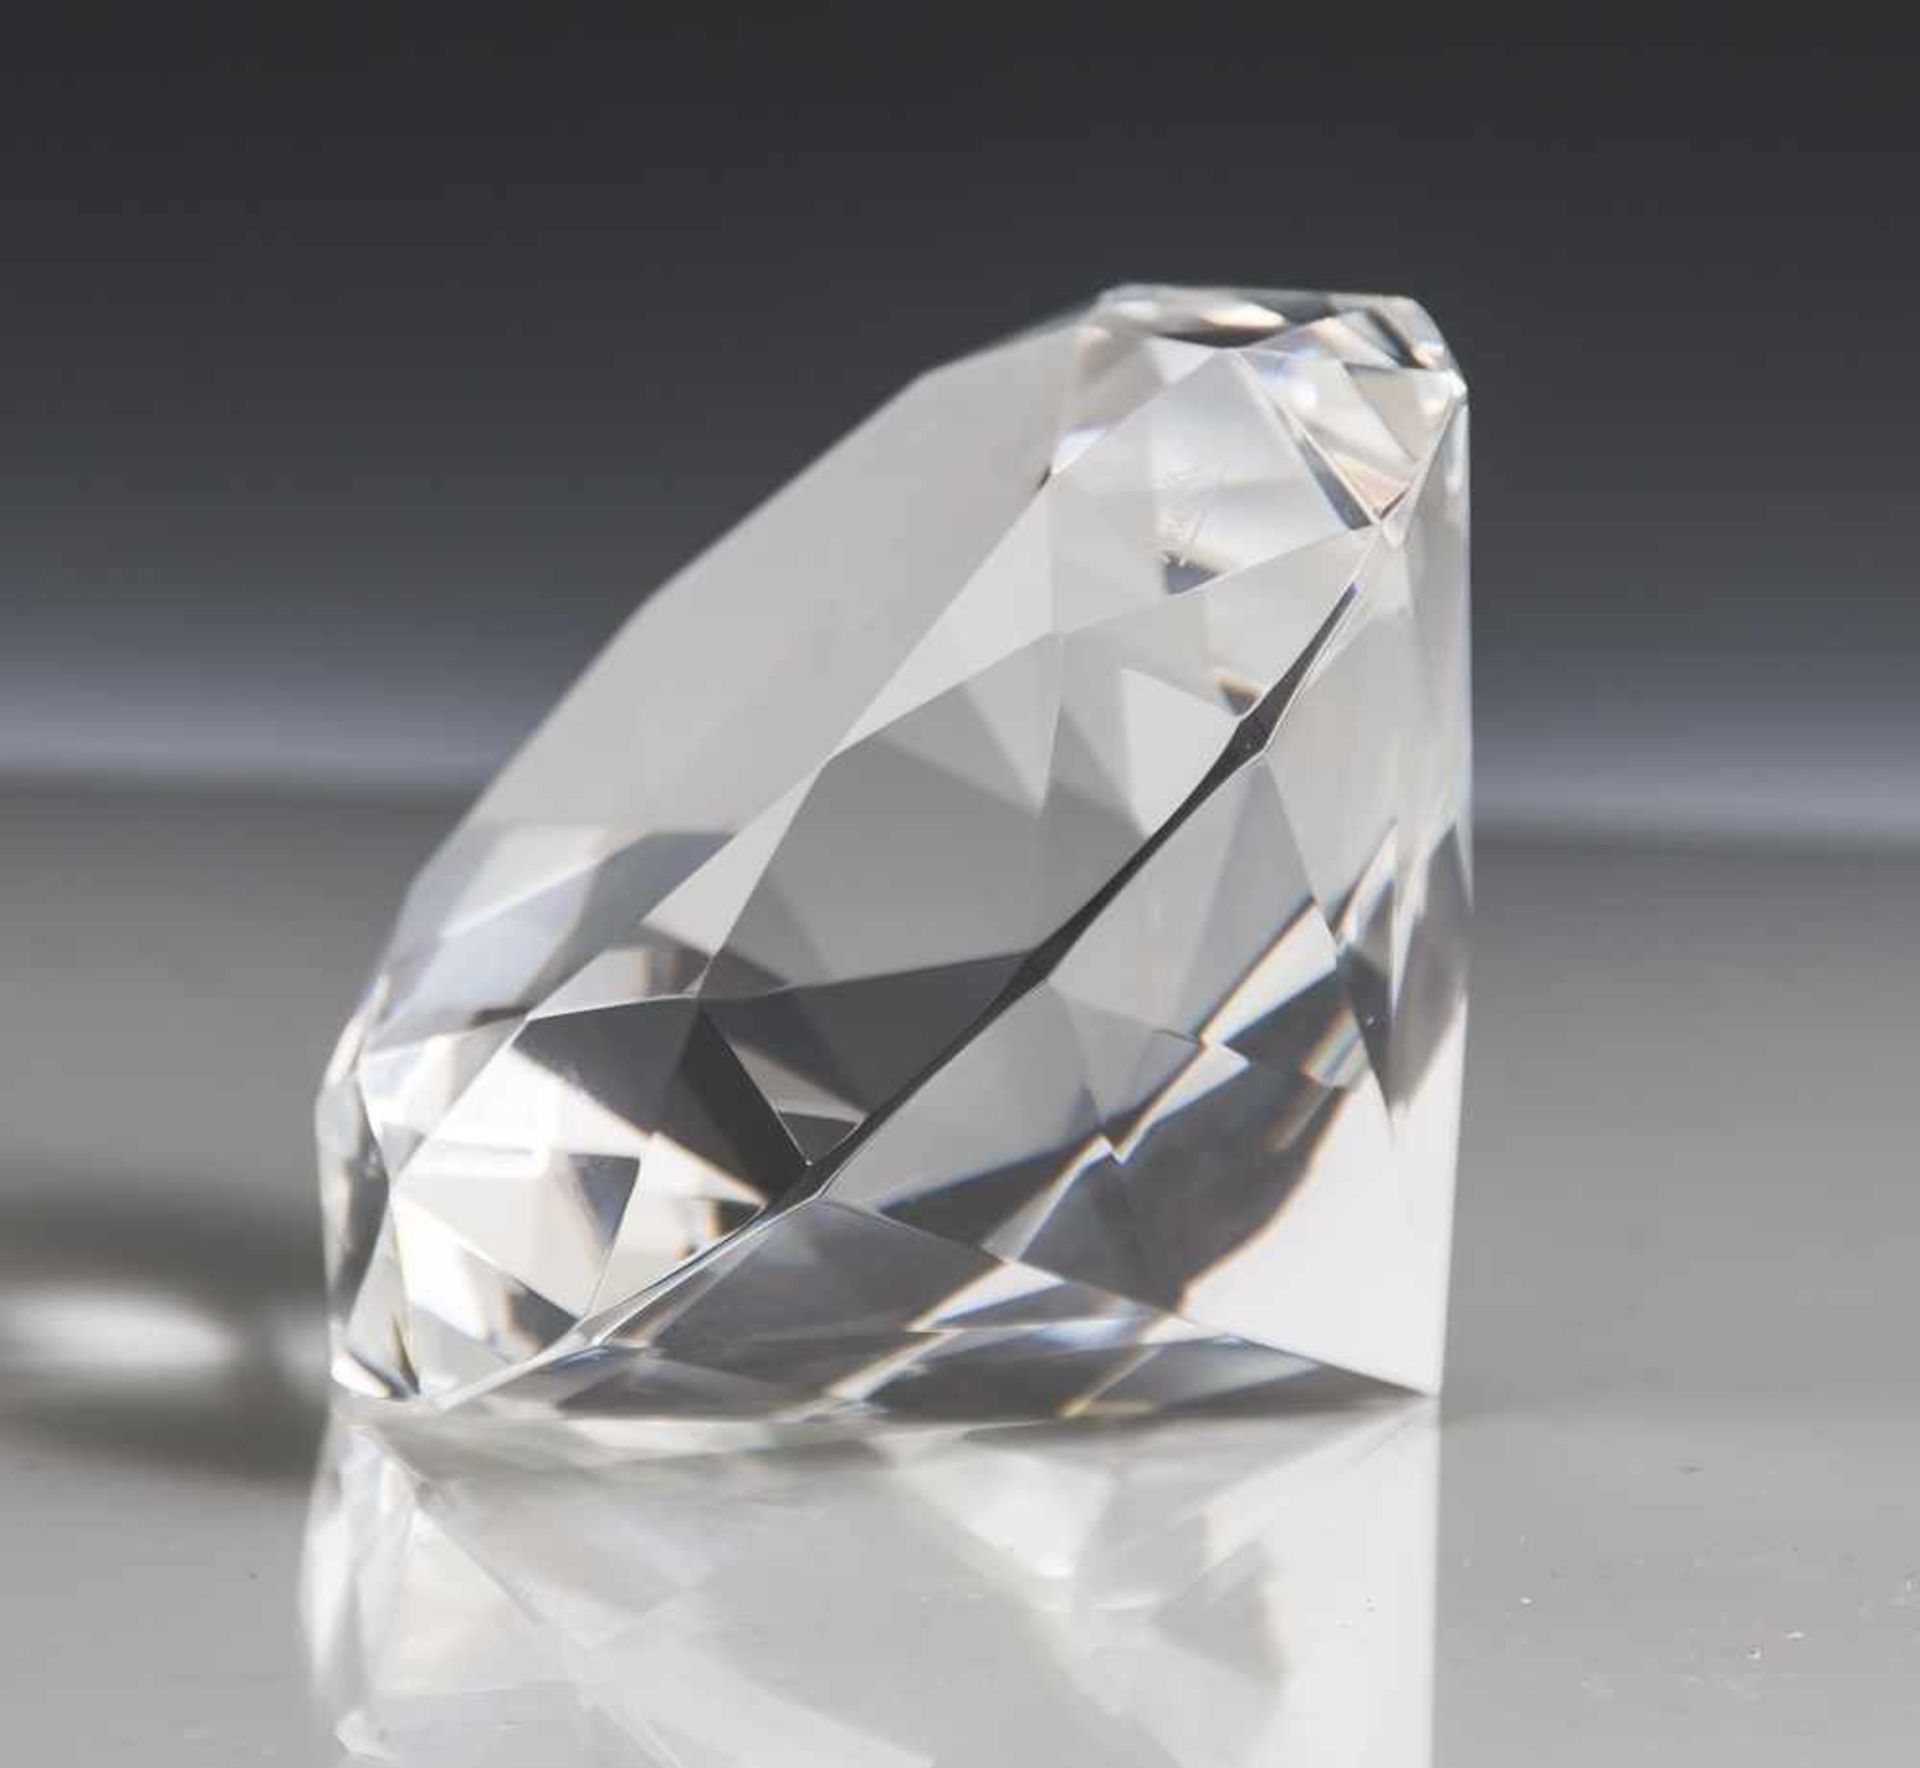 Kristallprisma in Diamantform, Rosenthal, seitlich geätztes Emblem, "Rosenthal", in org. Box. H. ca.